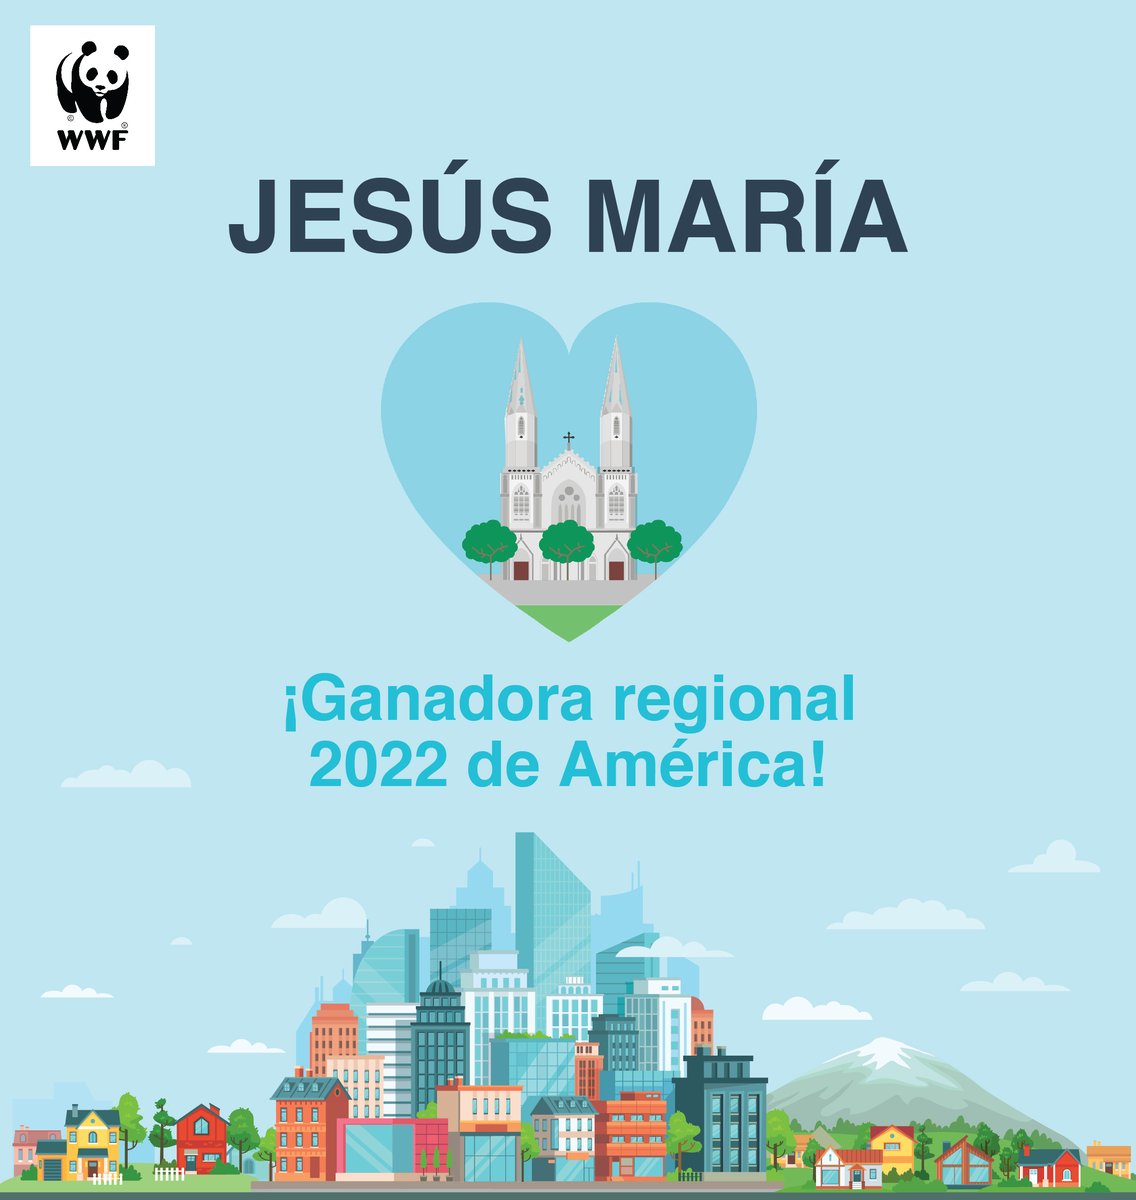 Jesús María ganadora regional 2022 de América